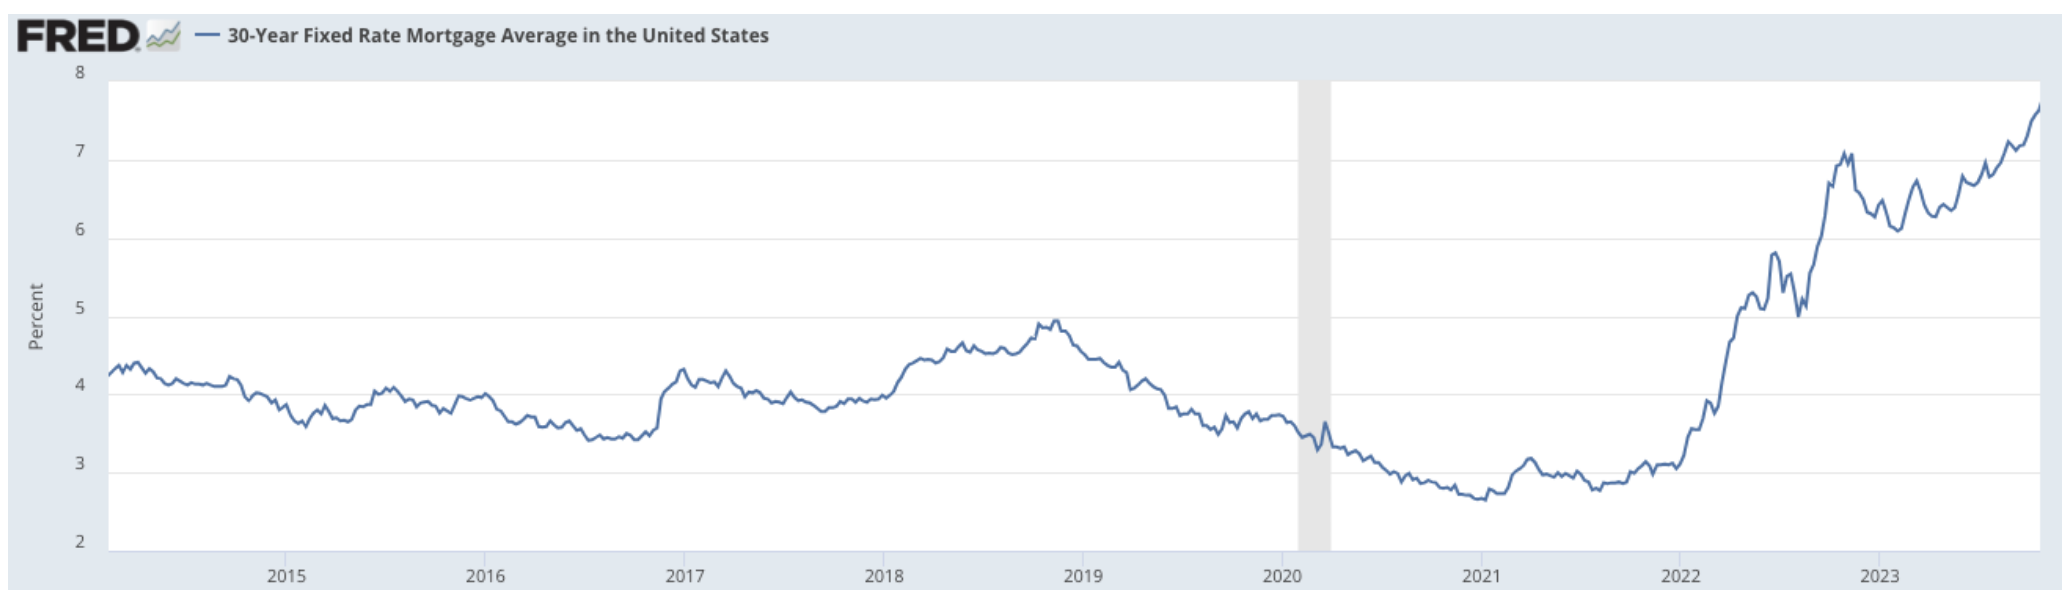 米国の30年固定金利は7.5%の水準に上昇